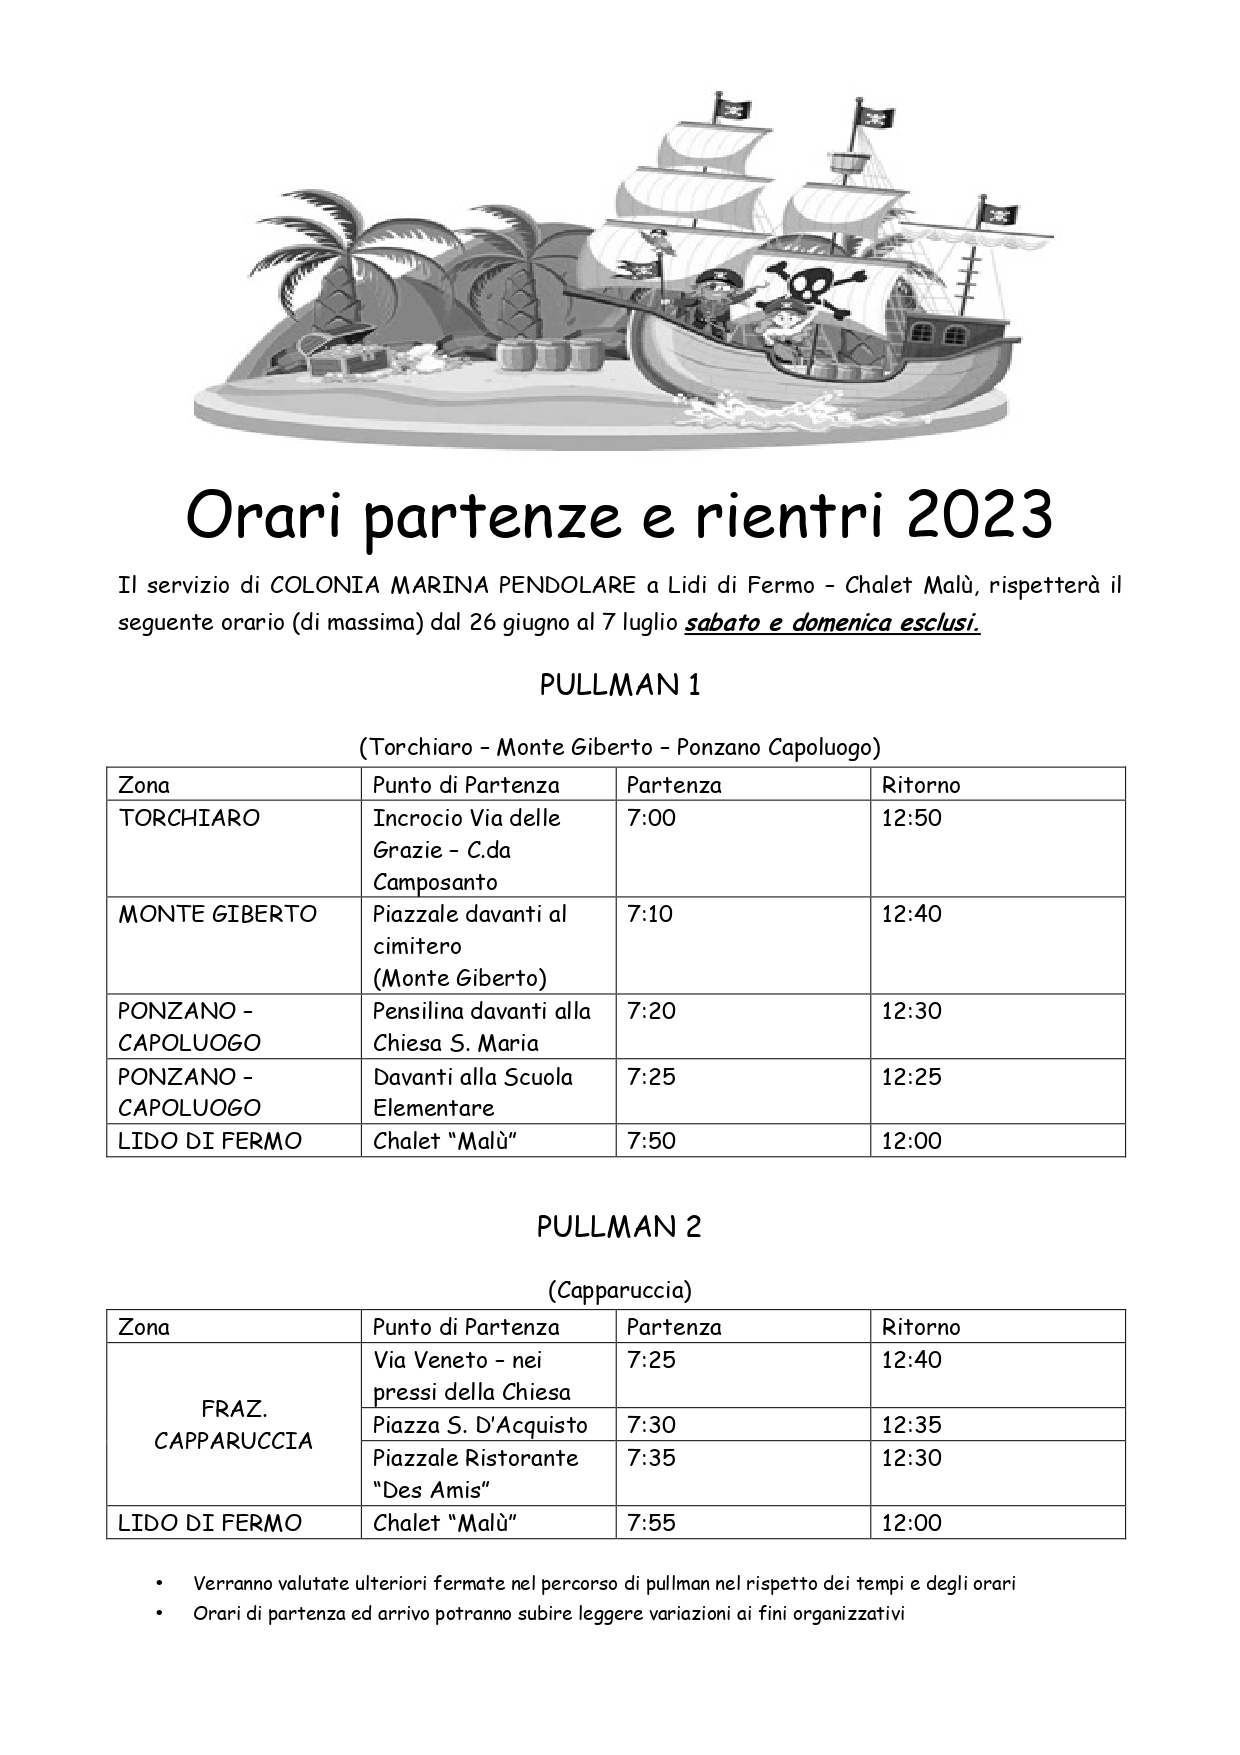 ORARI PARTENZA E RIENTRO COLONIE MARINE 2023